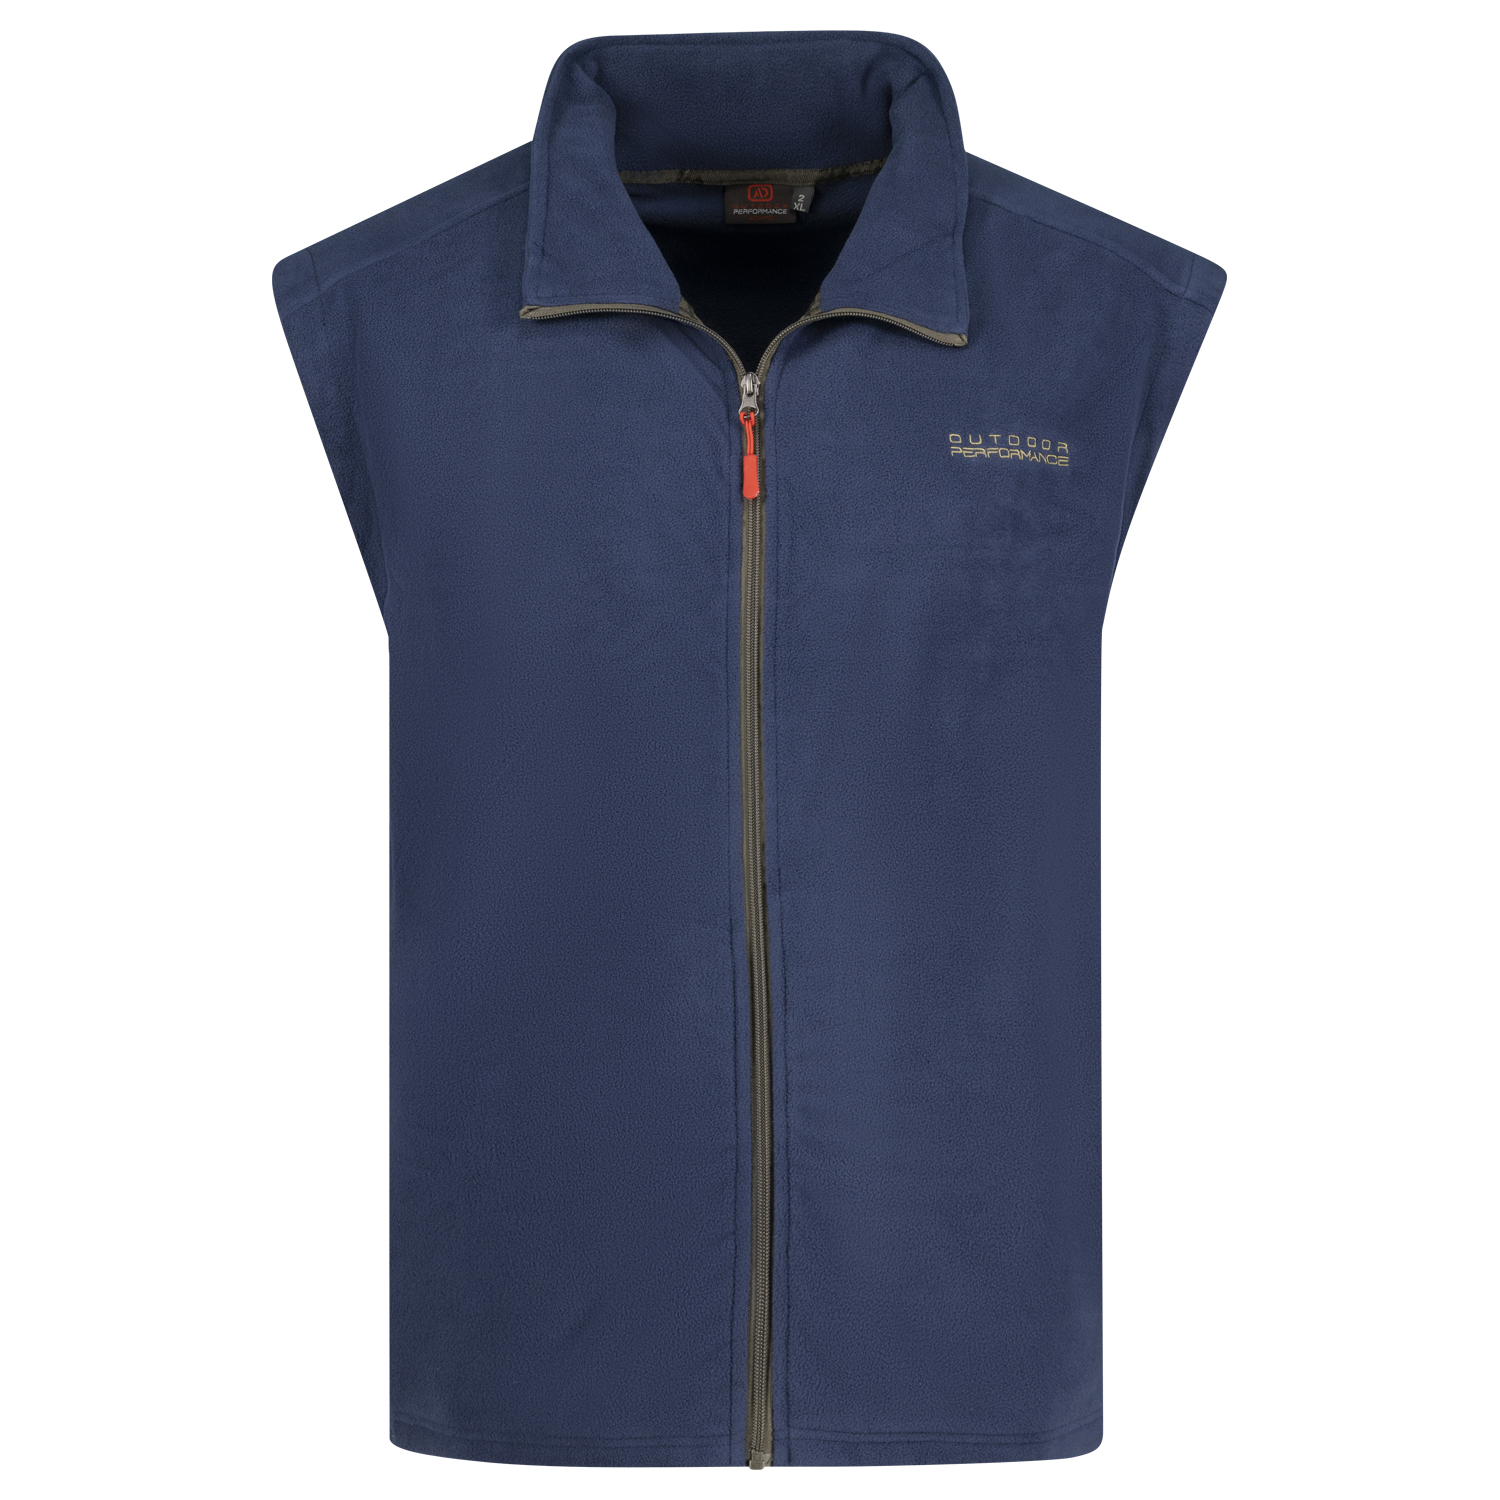 Fleece vest in navy Series Montreal by Adamo up to oversize 12XL